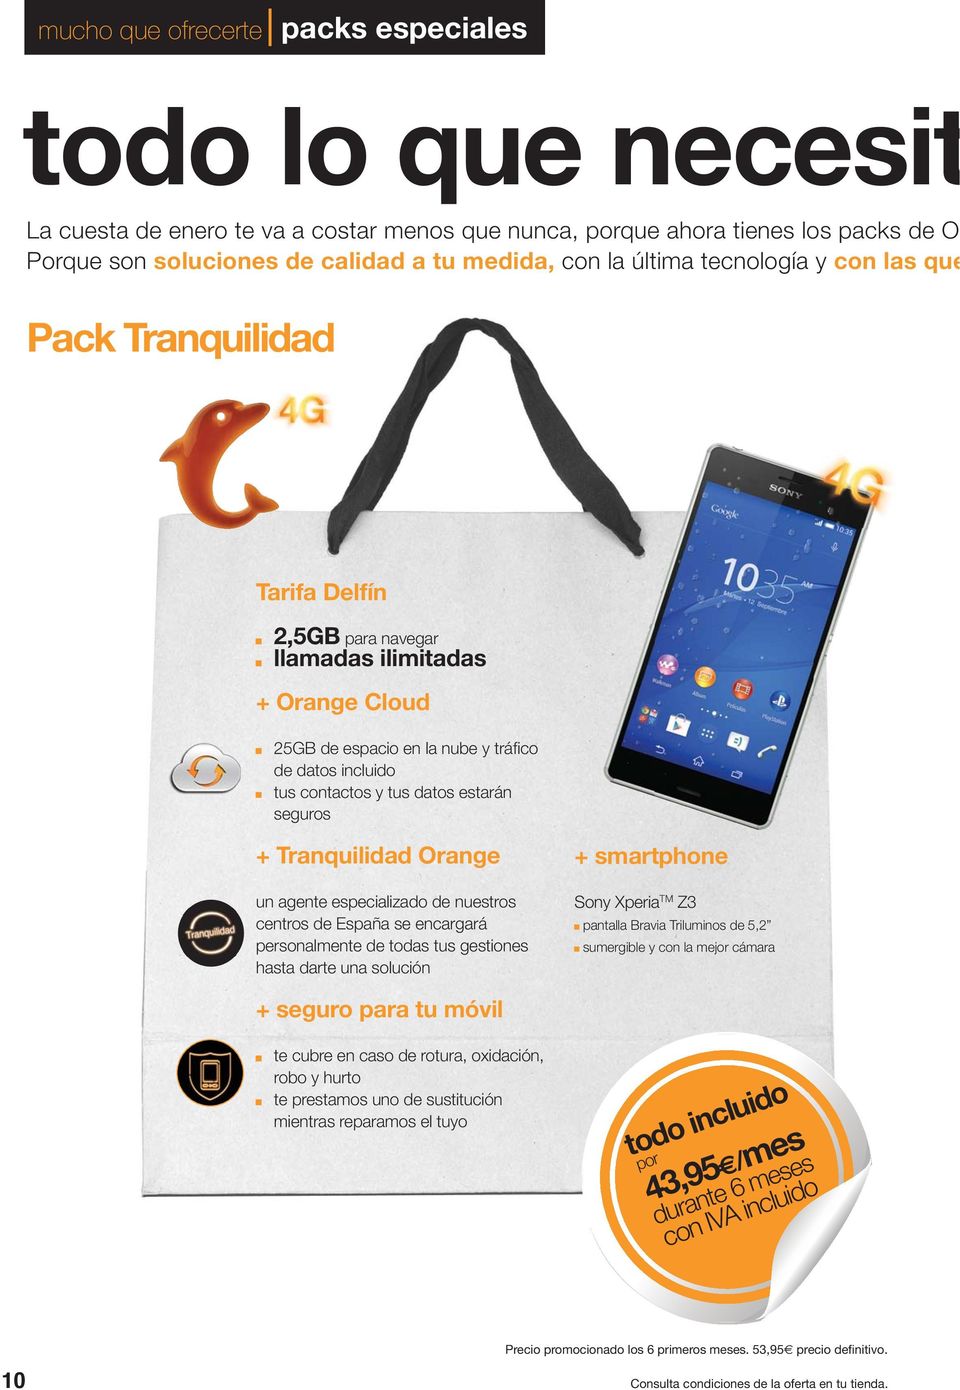 estarán seguros + Tranquilidad Orange un agente especializado de nuestros centros de España se encargará personalmente de todas tus gestiones hasta darte una solución + smartphone Sony Xperia TM Z3